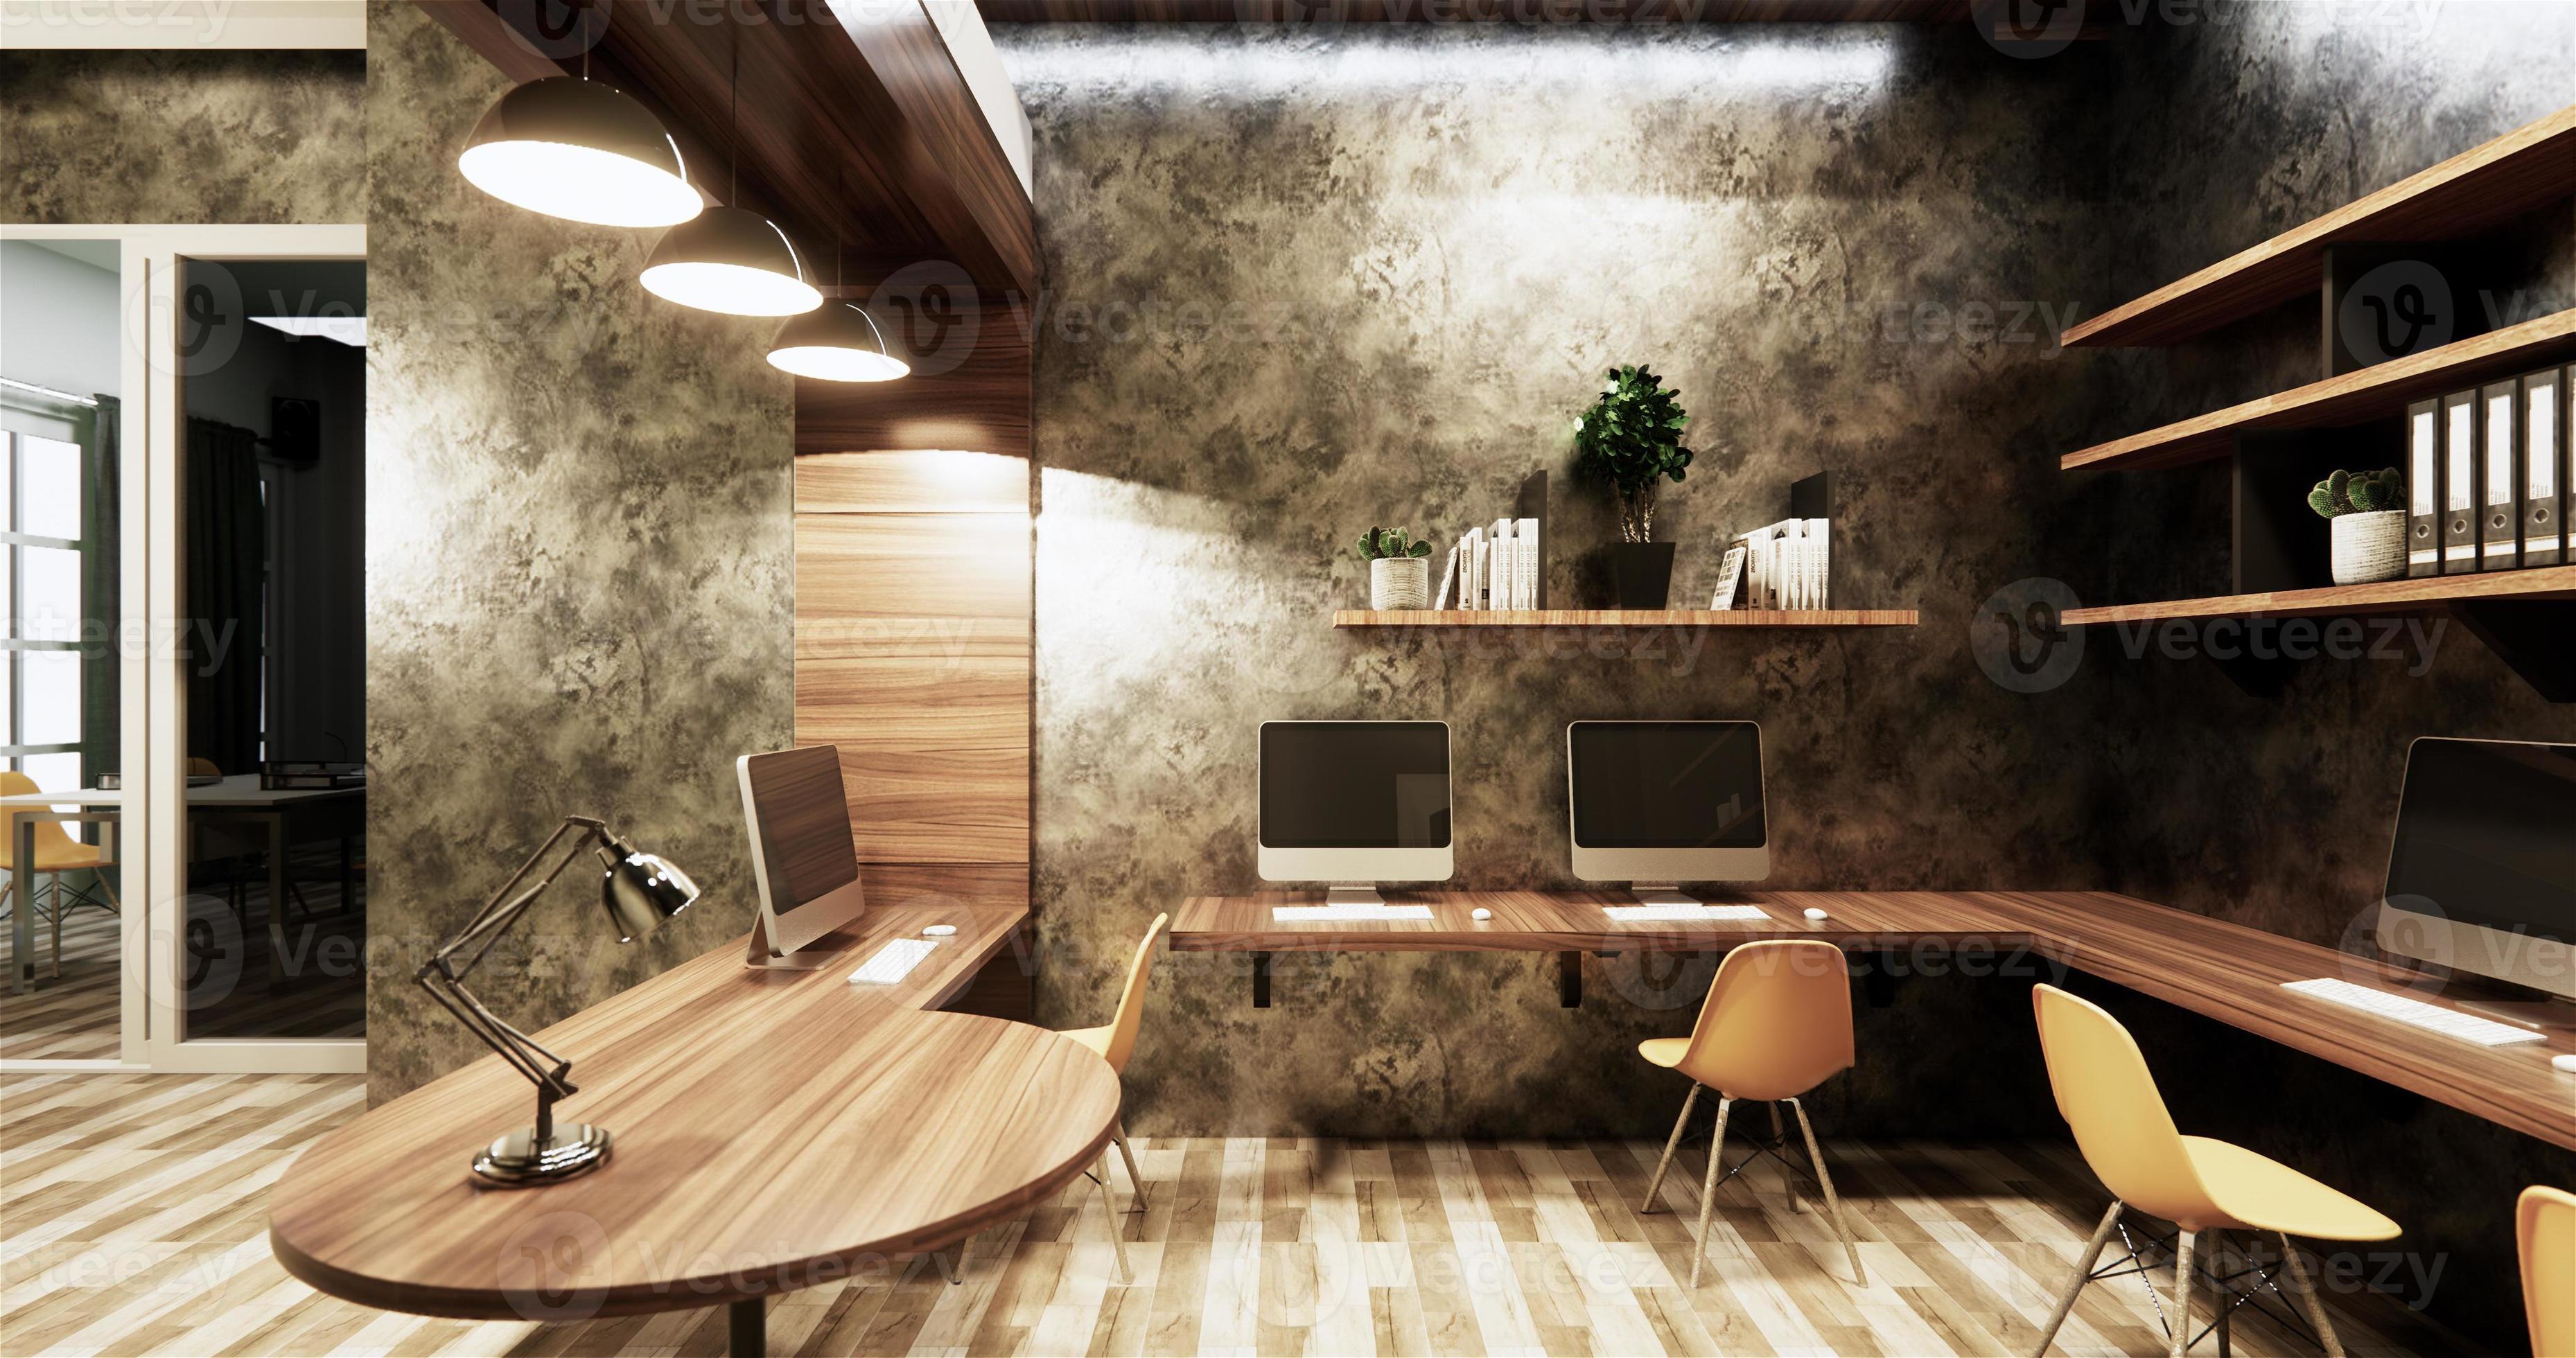 herder cent Op de grond kantoor studio loft-stijl interieur design betonnen muur grijs glanzend op  houten tegels.3D-rendering 4603586 Stockfoto